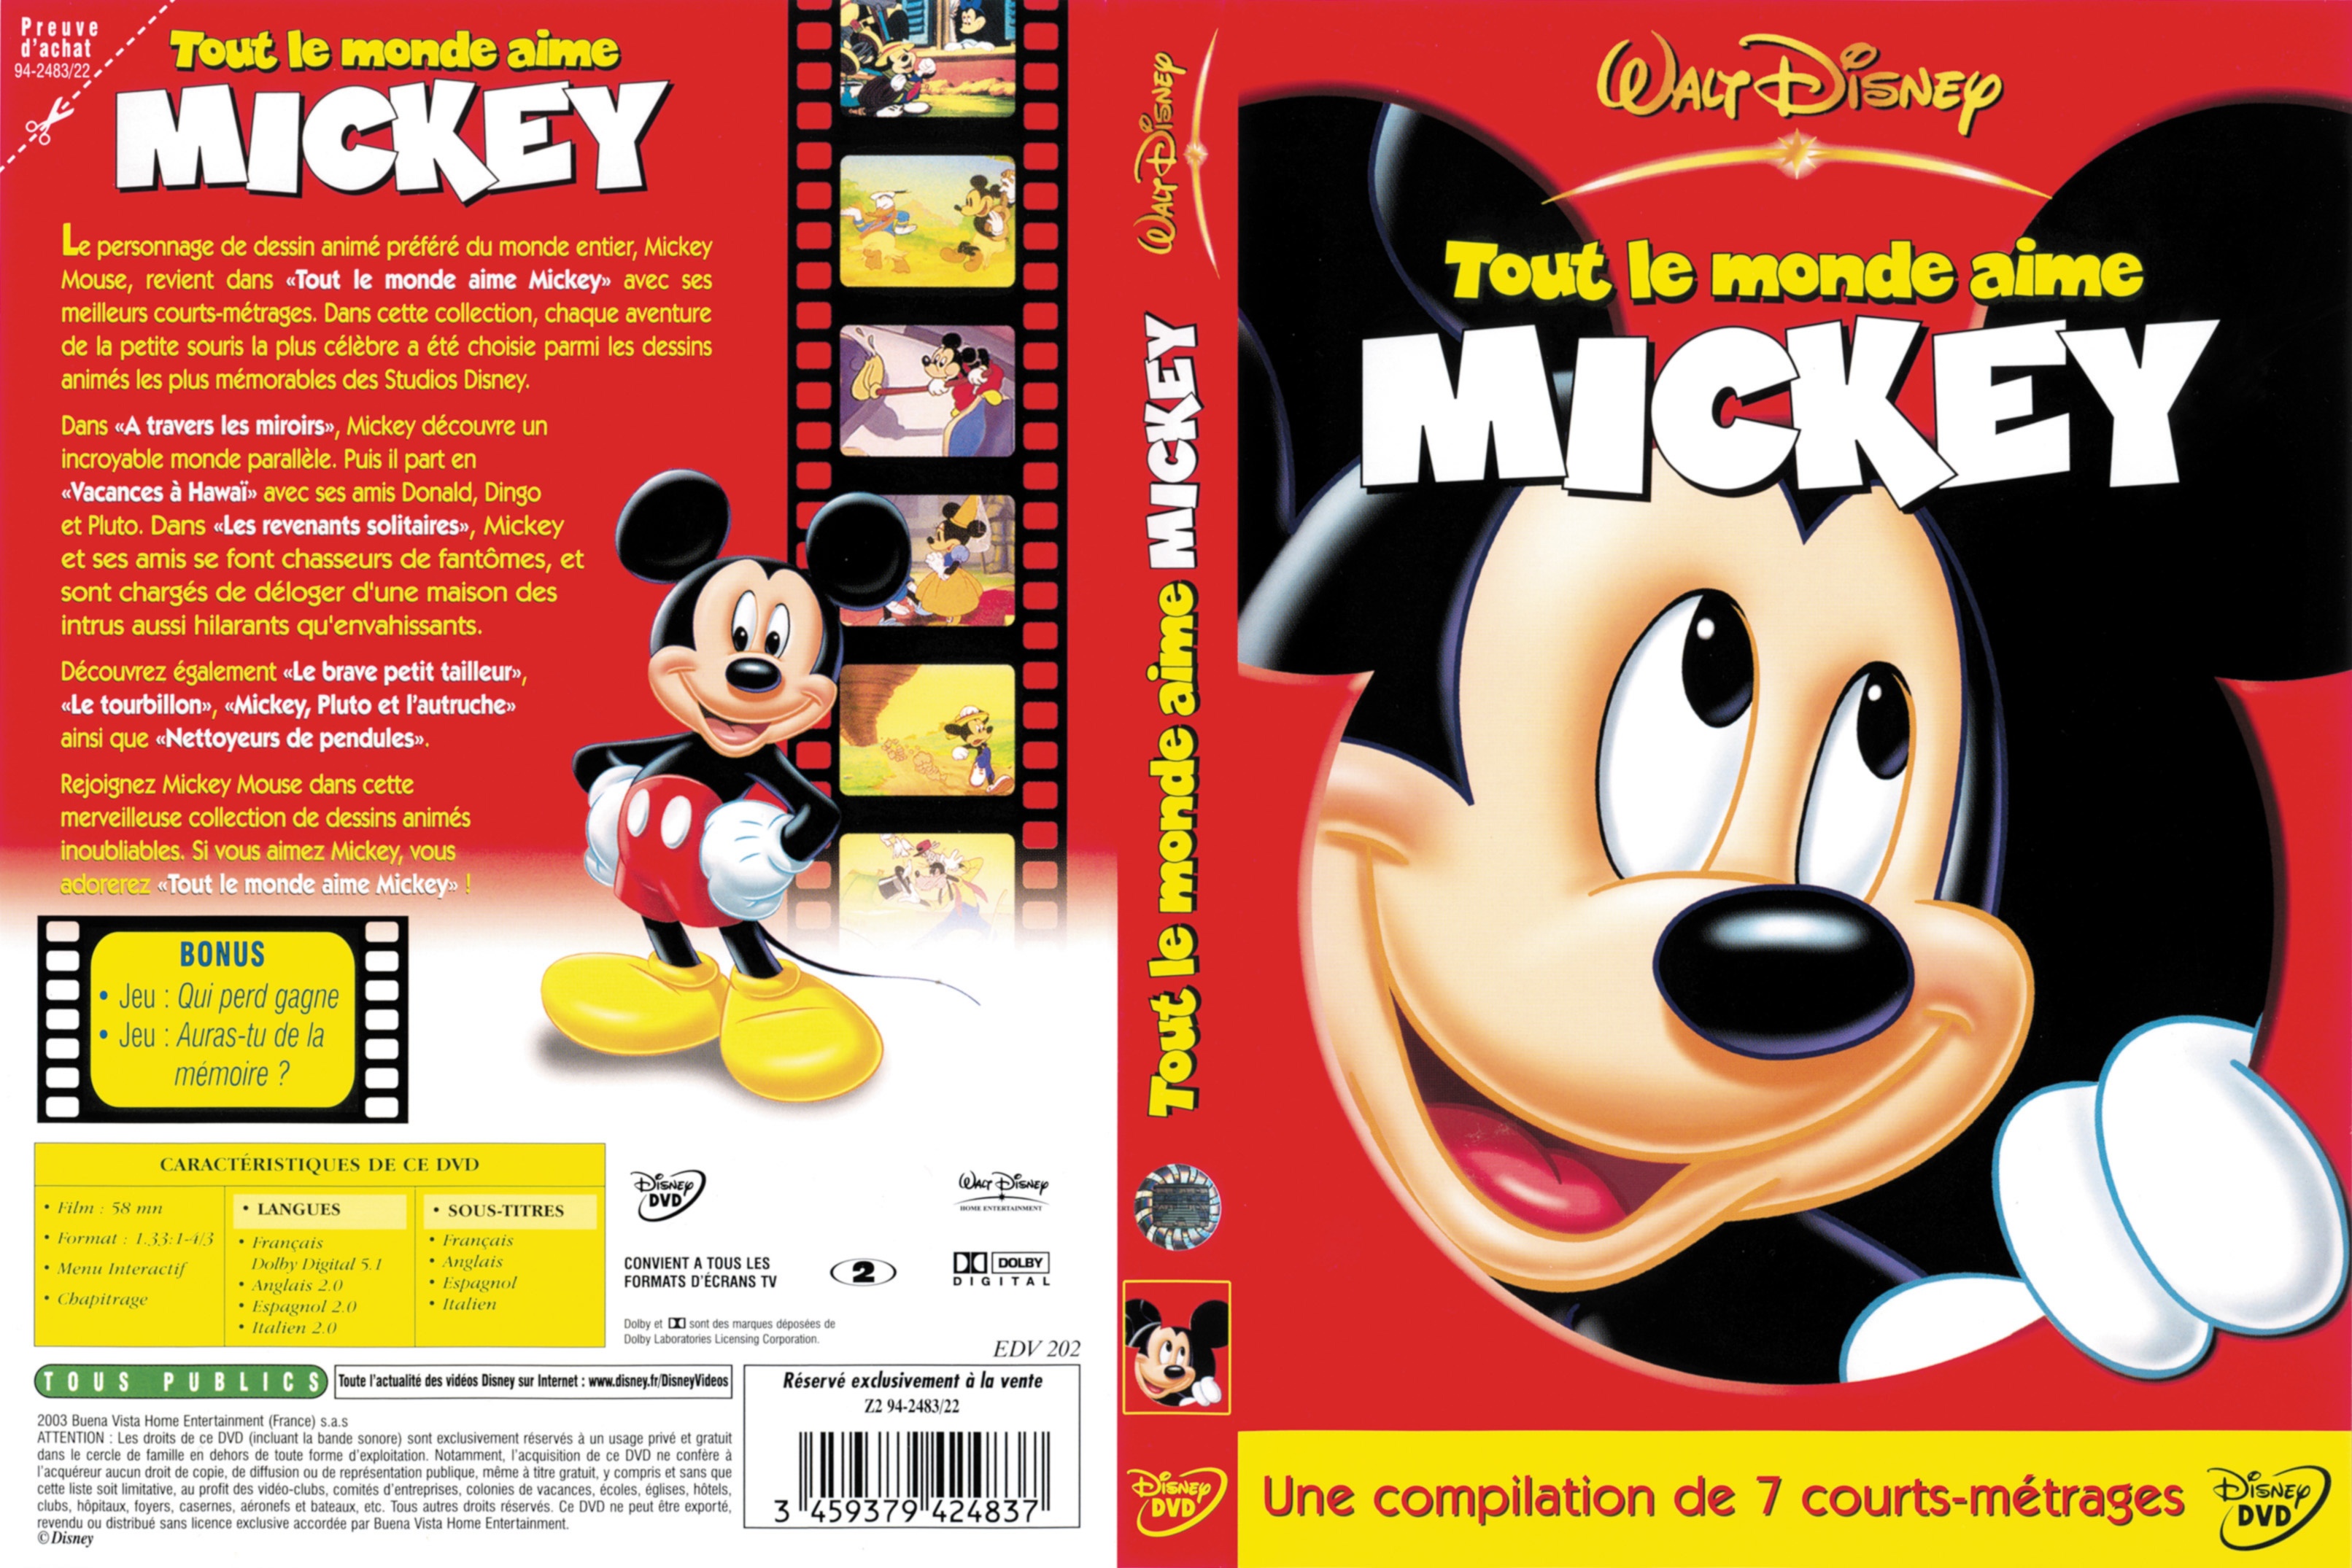 Jaquette DVD Tout le monde aime Mickey